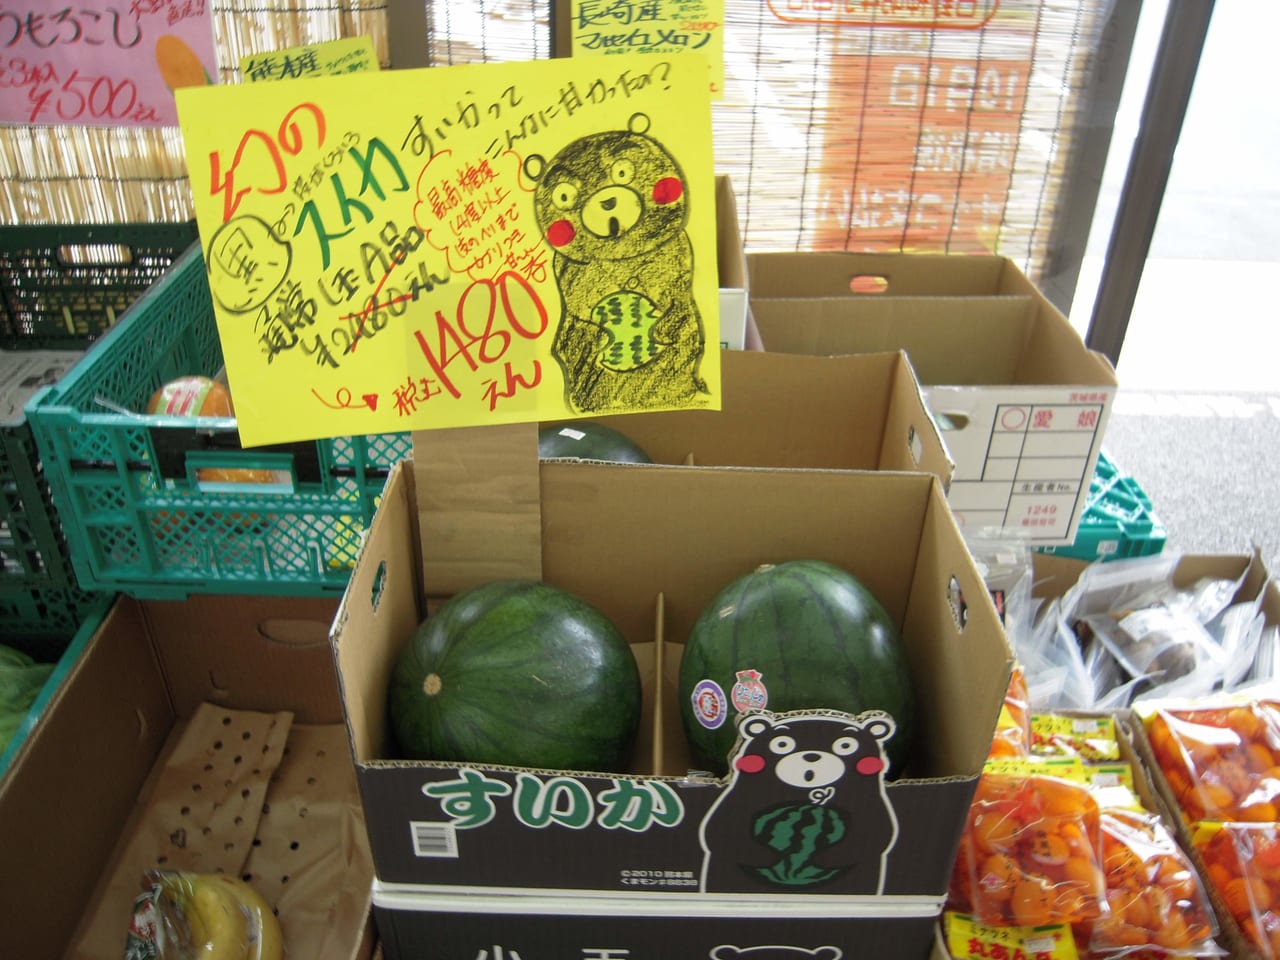 セブンイレブン神明４丁目店の野菜販売のポップが手書き